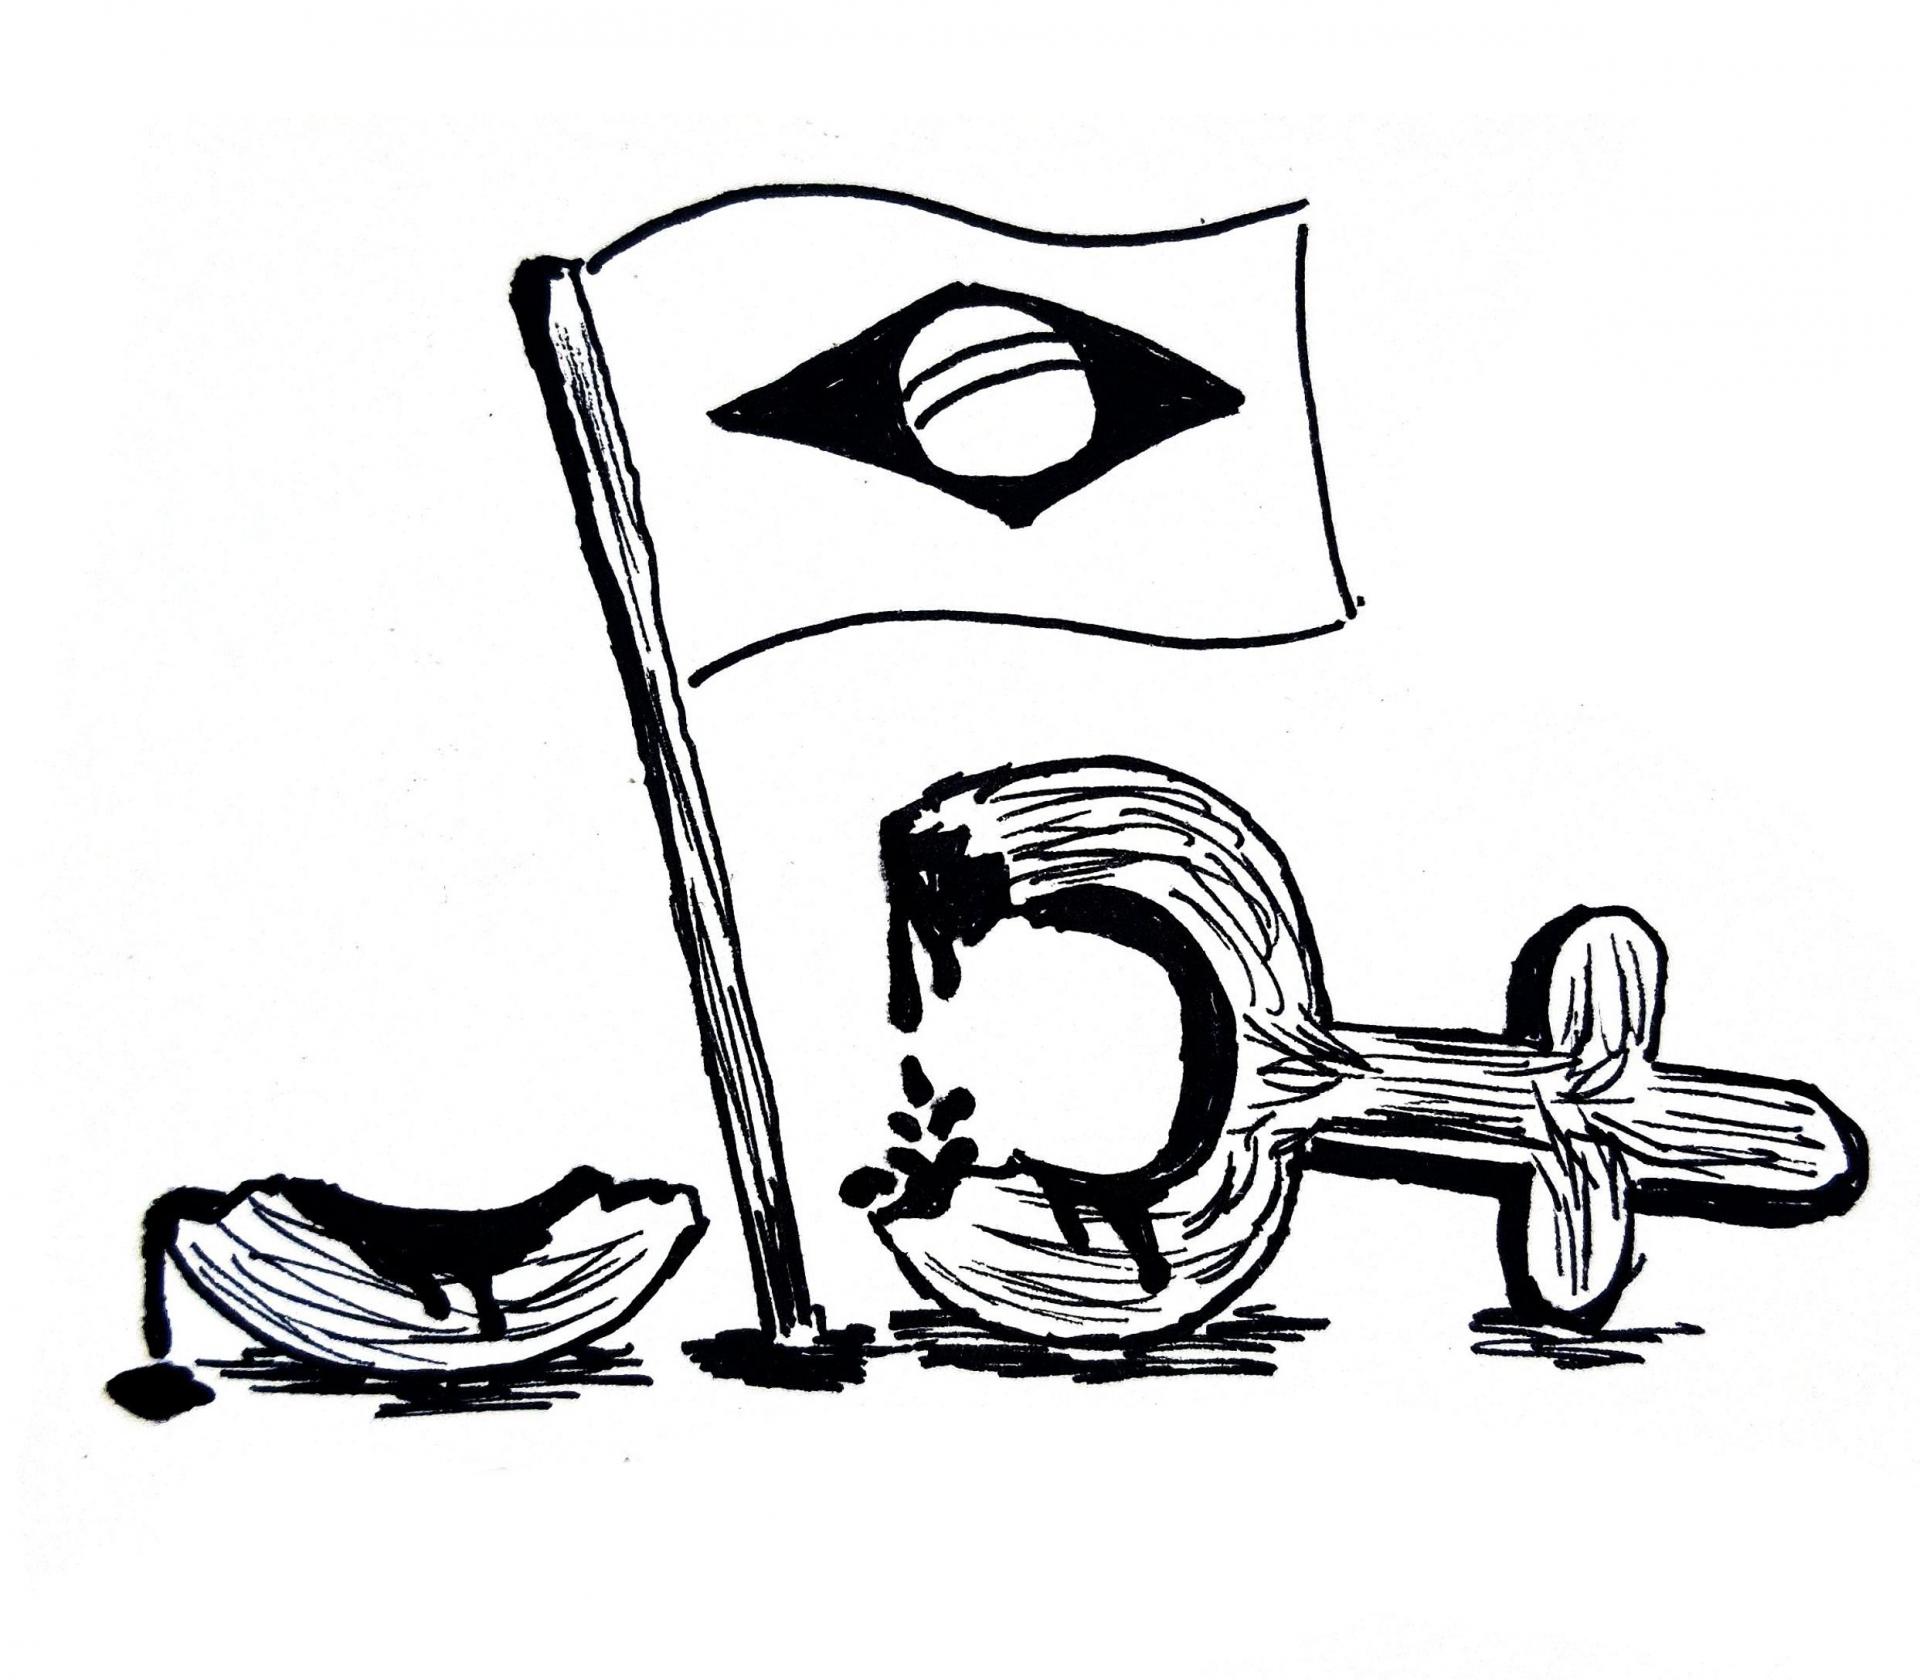 Uma ilustração que mostra uma bandeira do Brasil atravessando o o símbolo de vênus, que é usado para representar o feminino. Esse símbolo consiste em um círculo com uma cruz abaixo dele.